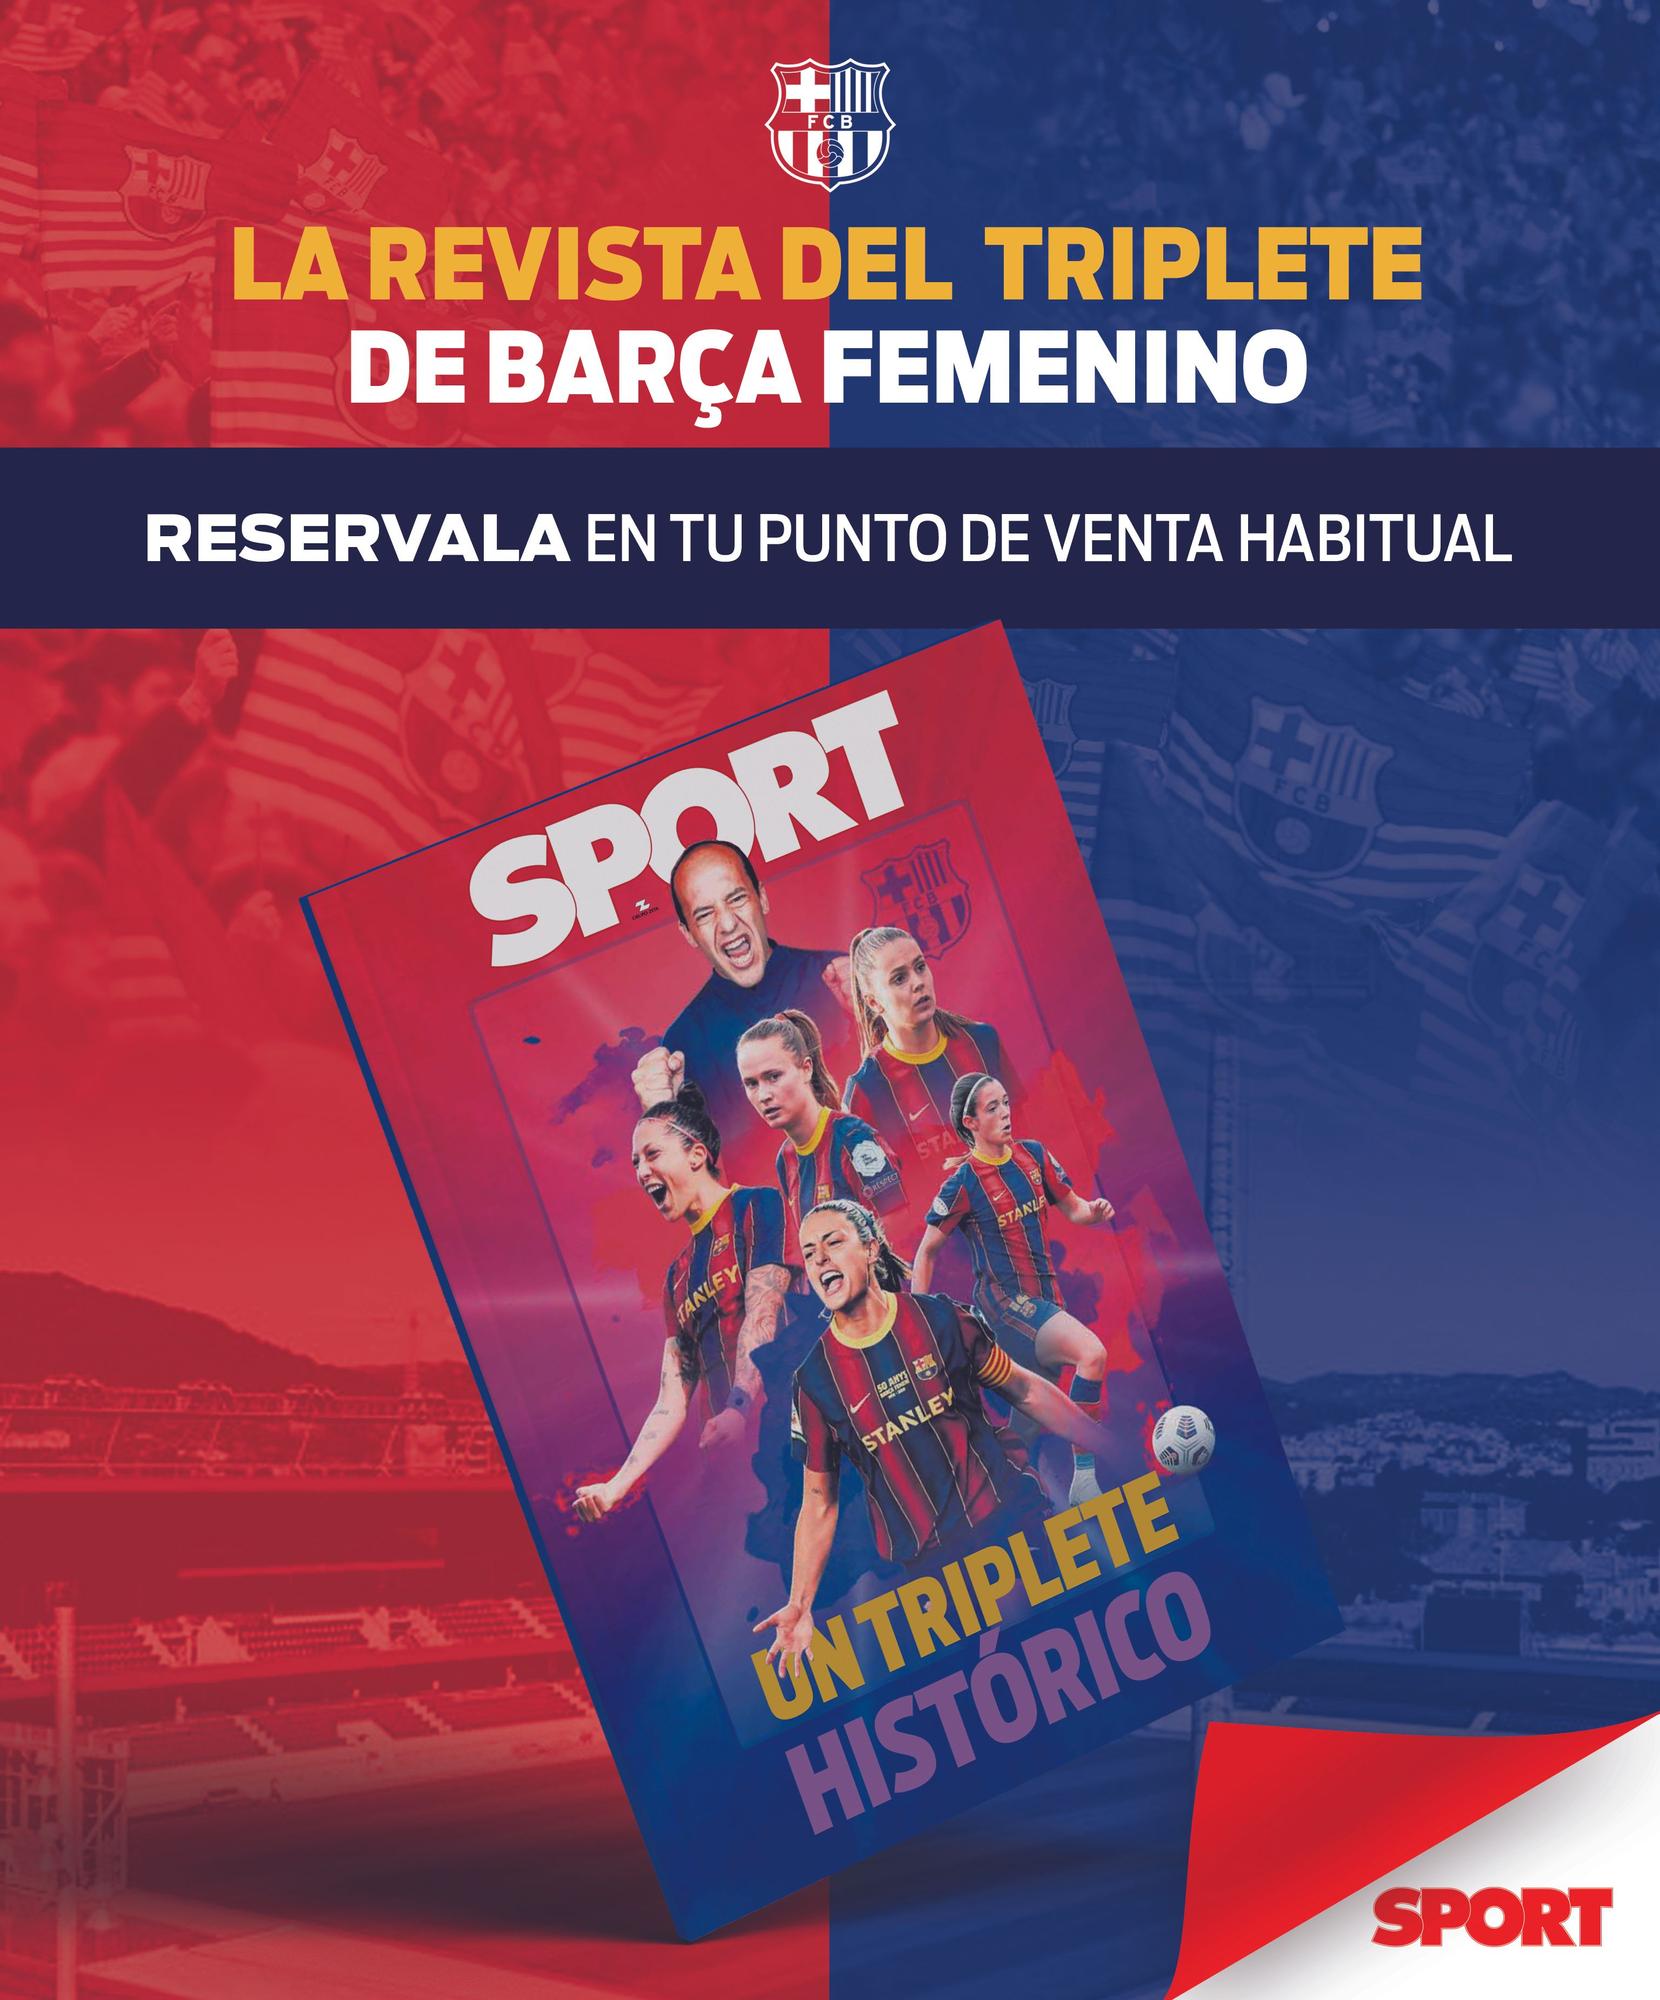 La revista del triplete del Barça femenino solo con SPORT